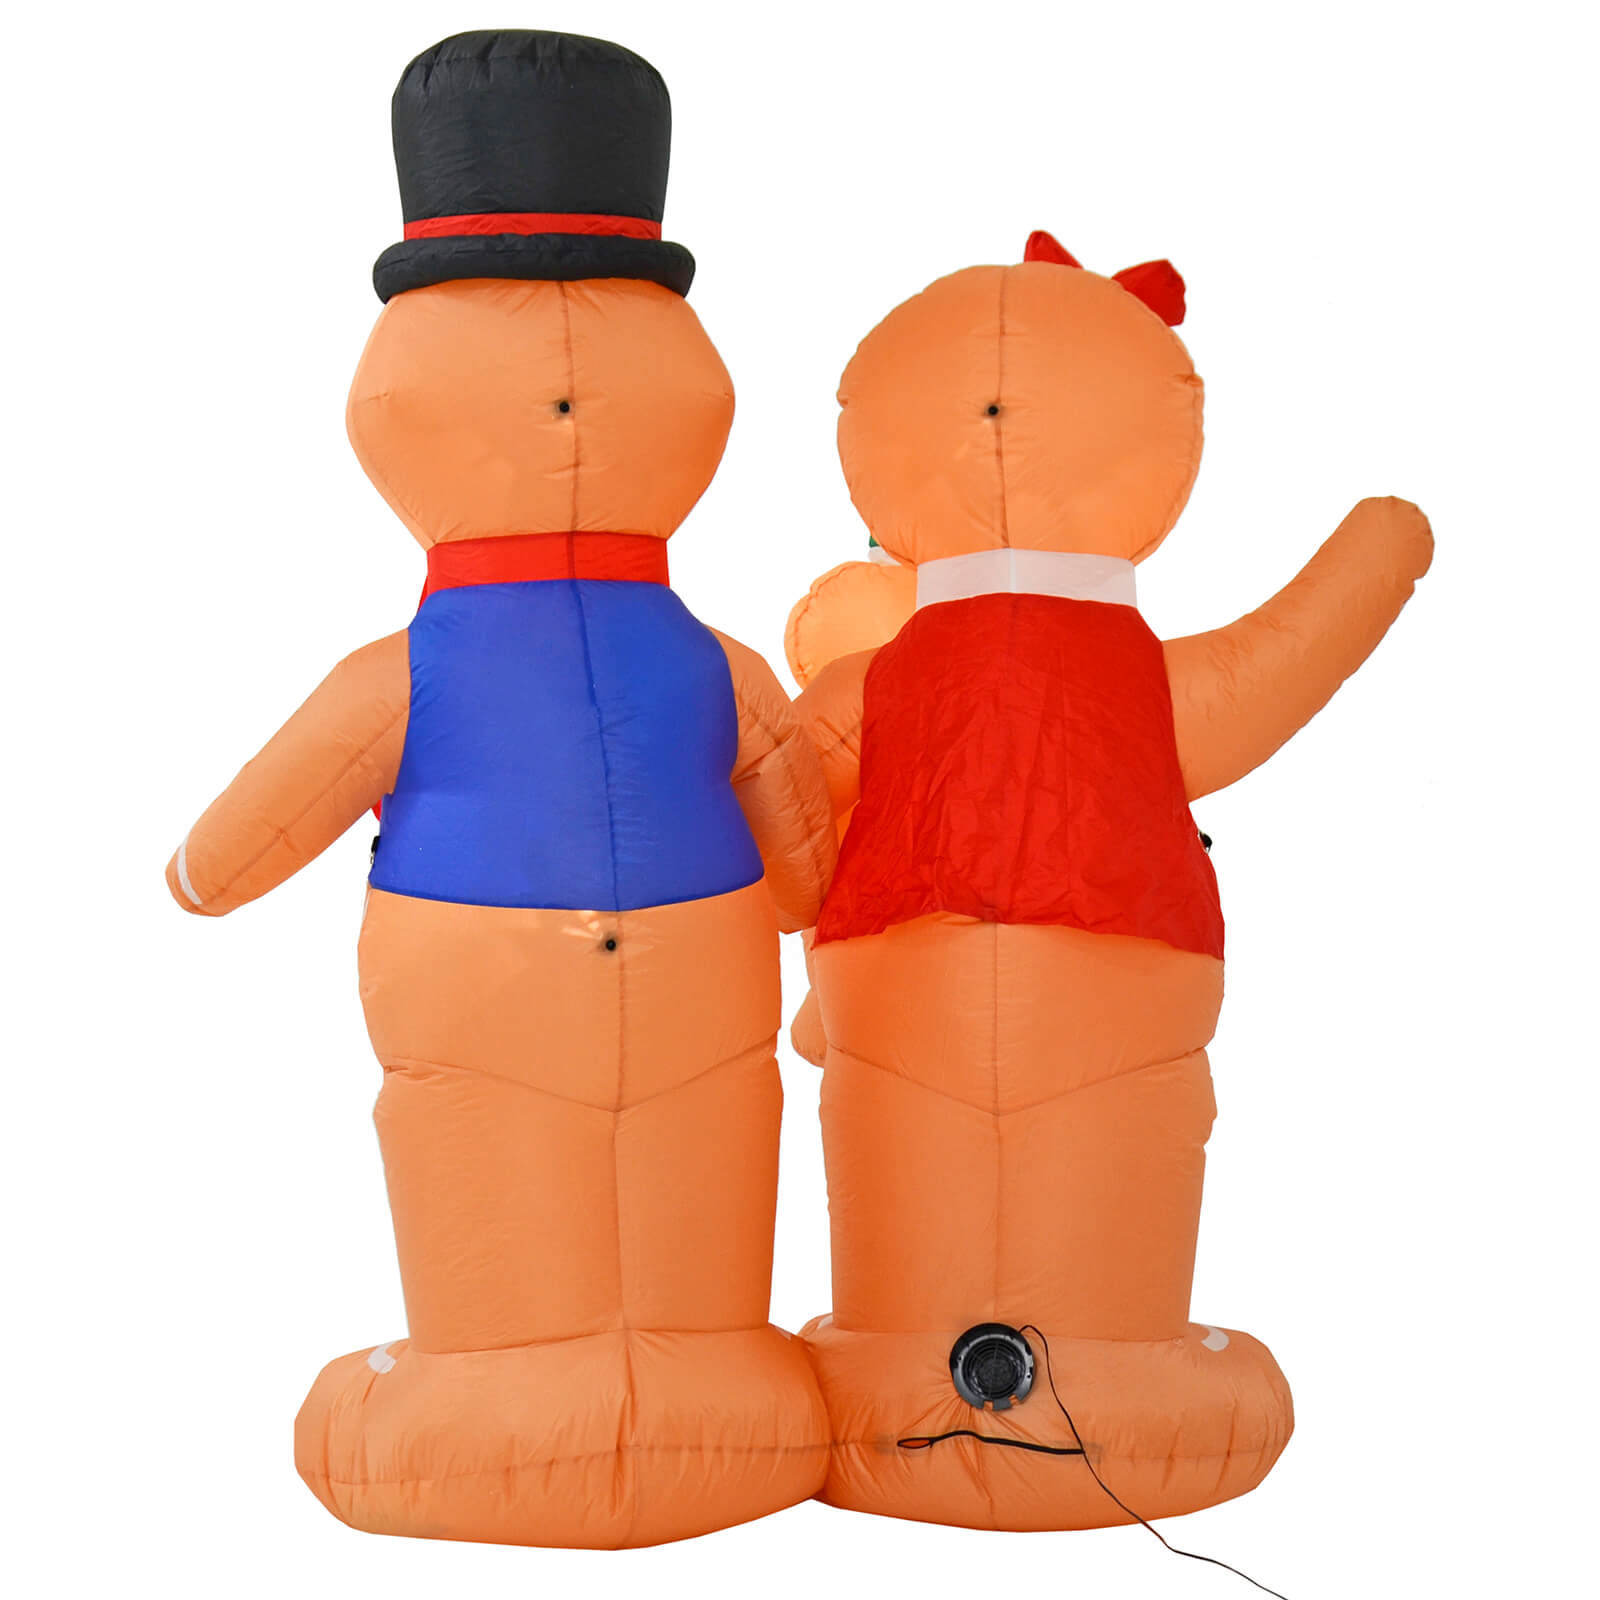 Mr Crimbo 6ft Light Up Christmas Inflatable Gingerbread Family - MrCrimbo.co.uk -XS7215 - -ginger bread